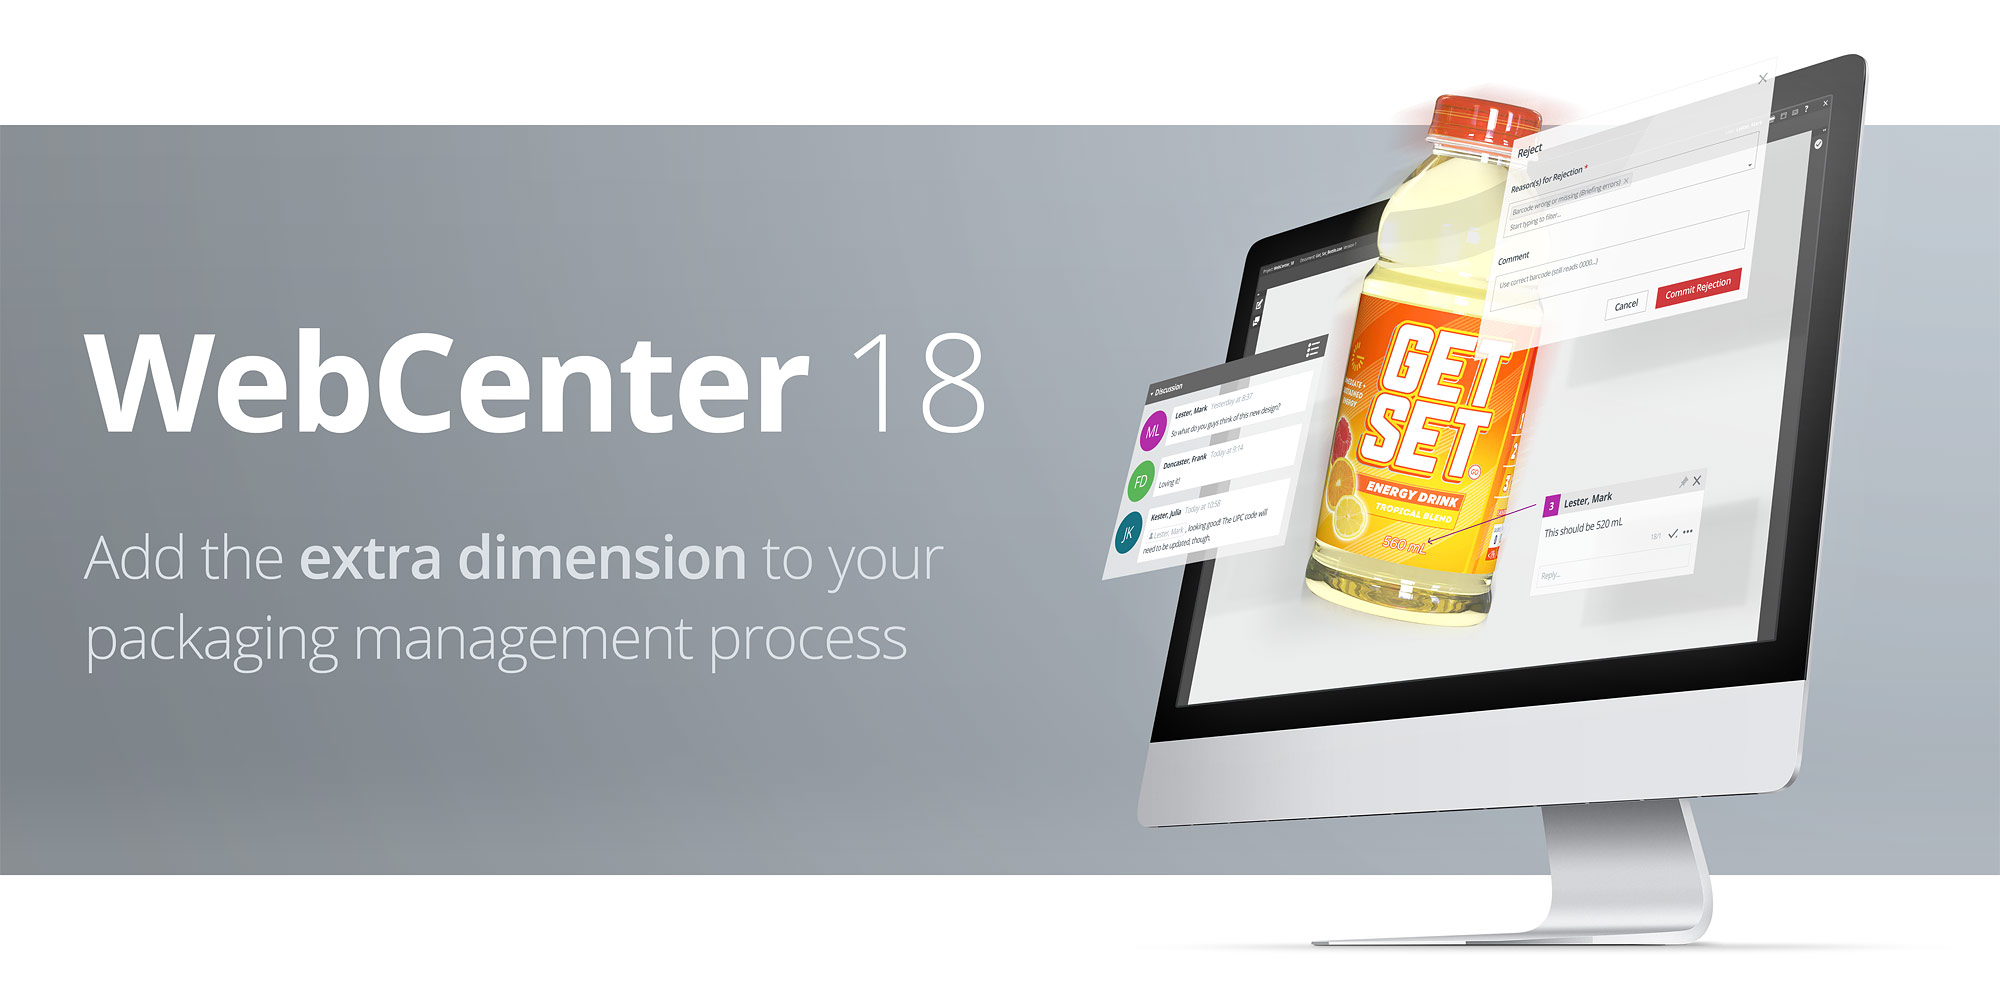 WebCenter 18 - Ajoutez une dimension supplémentaire à votre processus de gestion de l’emballage